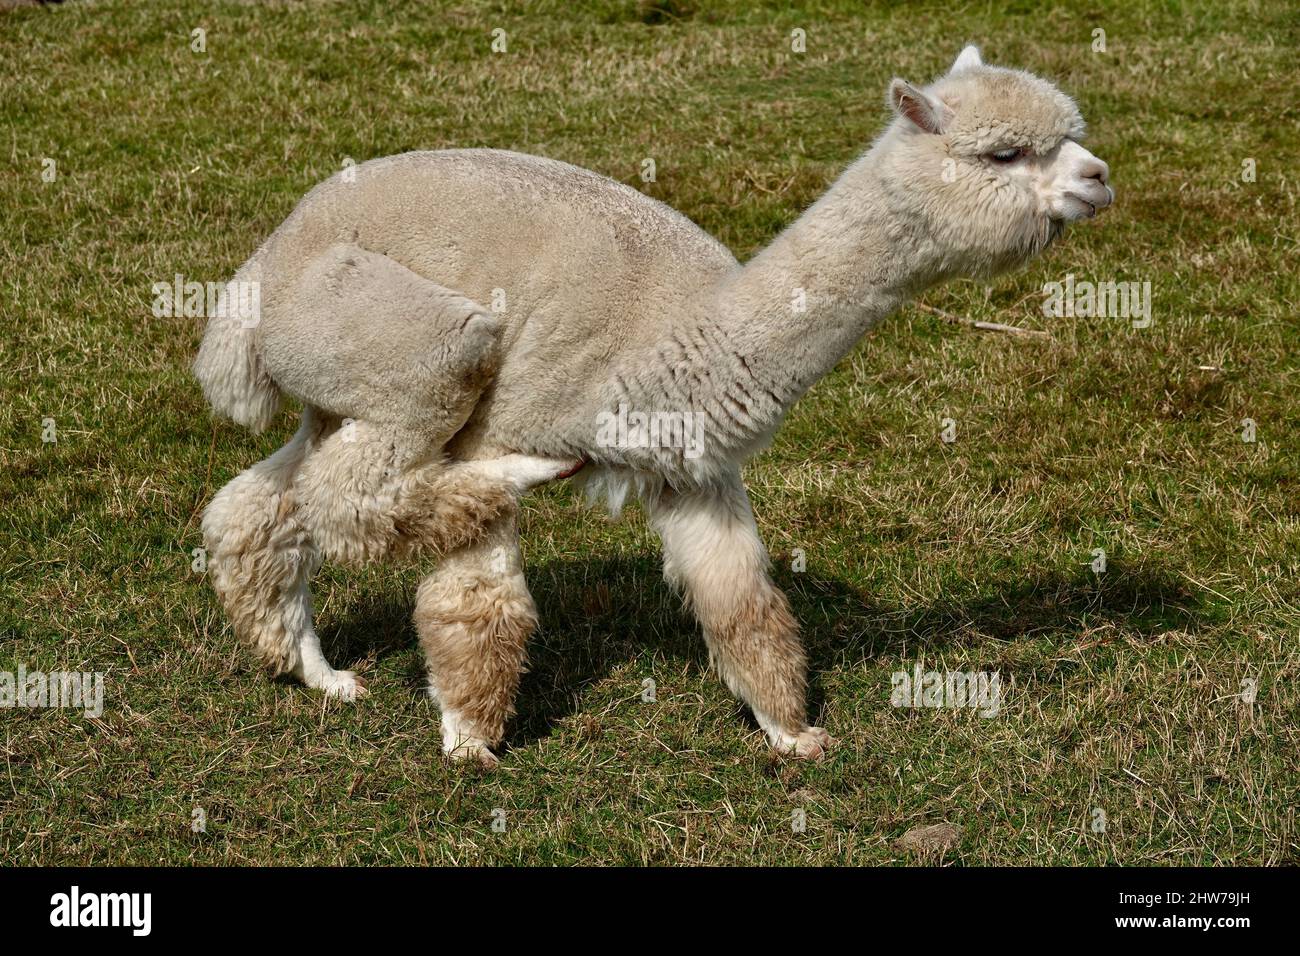 Der süße Erwachsene Lama alpaca steht auf grünem Gras und ist dabei, seine Hüfte mit seinen Hinterbeinen zu kratzen. Stockfoto